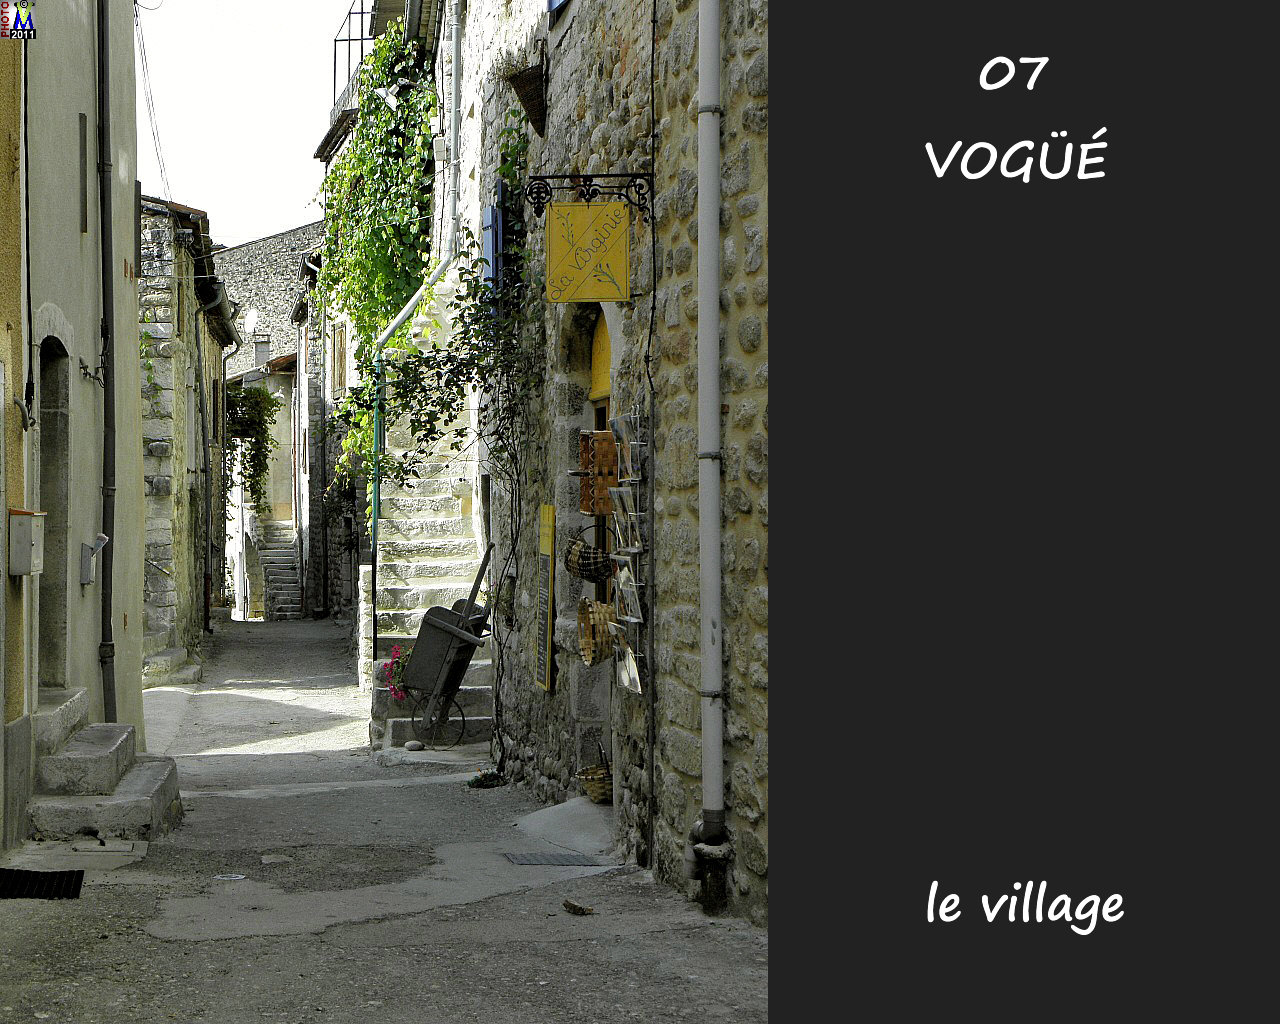 07VOGUE_village_134.jpg